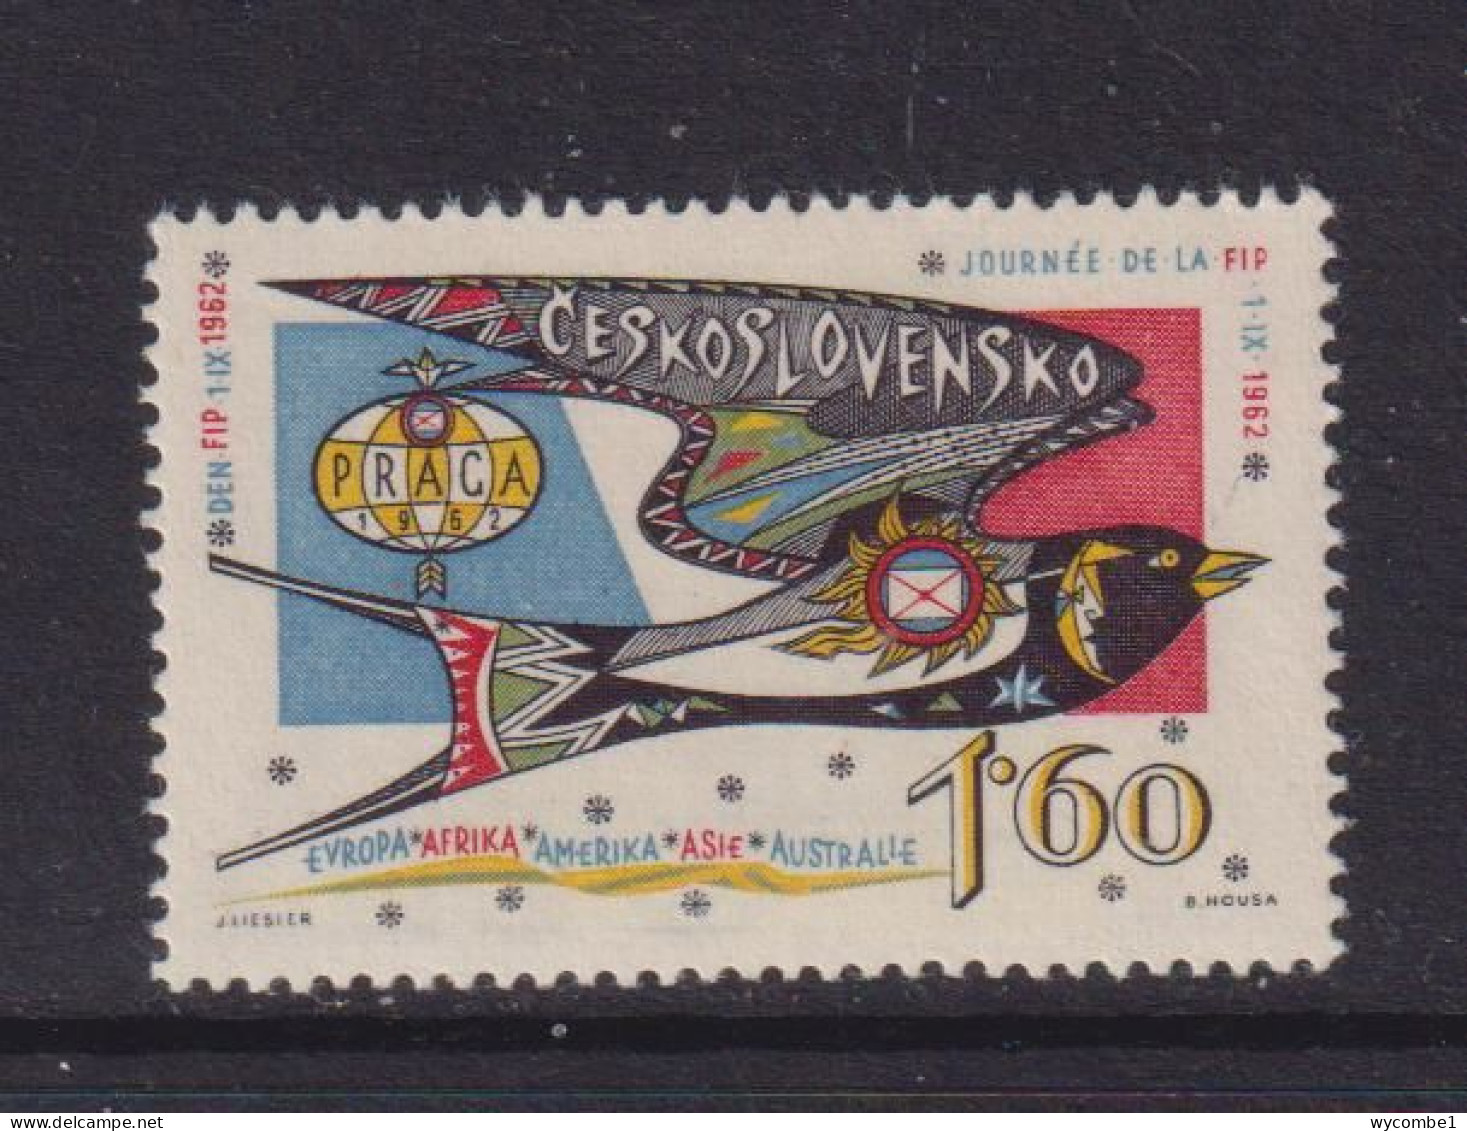 CZECHOSLOVAKIA  - 1962 FIP Day1k60 Never Hinged Mint - Ongebruikt